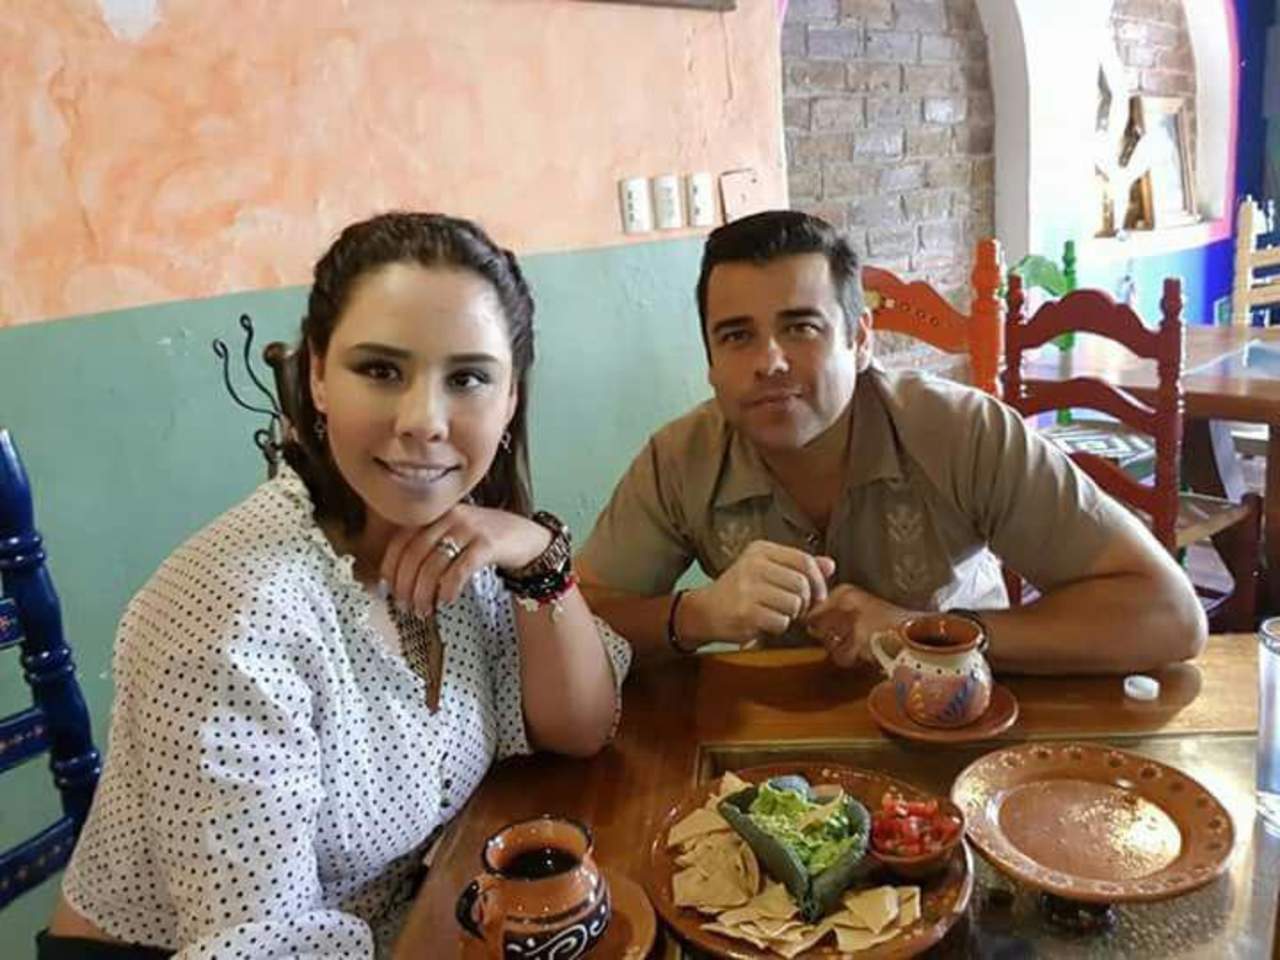 Graves, exalcalde de Morelos y su pareja tras volcadura